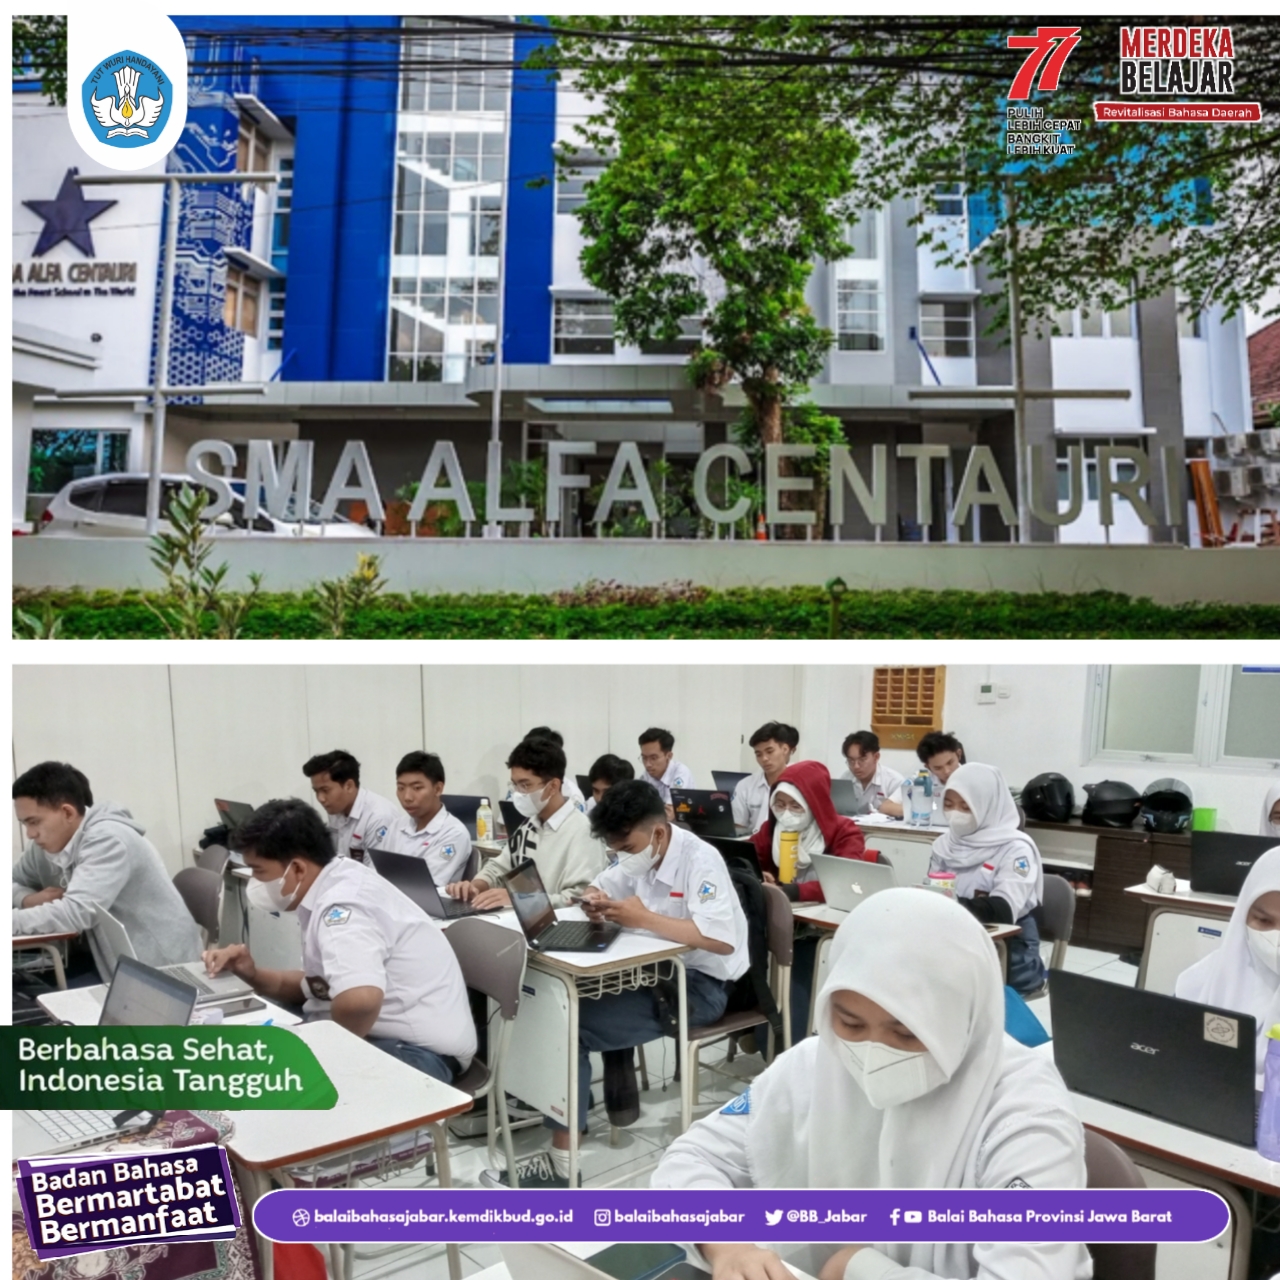 Pelaksanaan UKBI di SMA Alfa Centauri Bandung